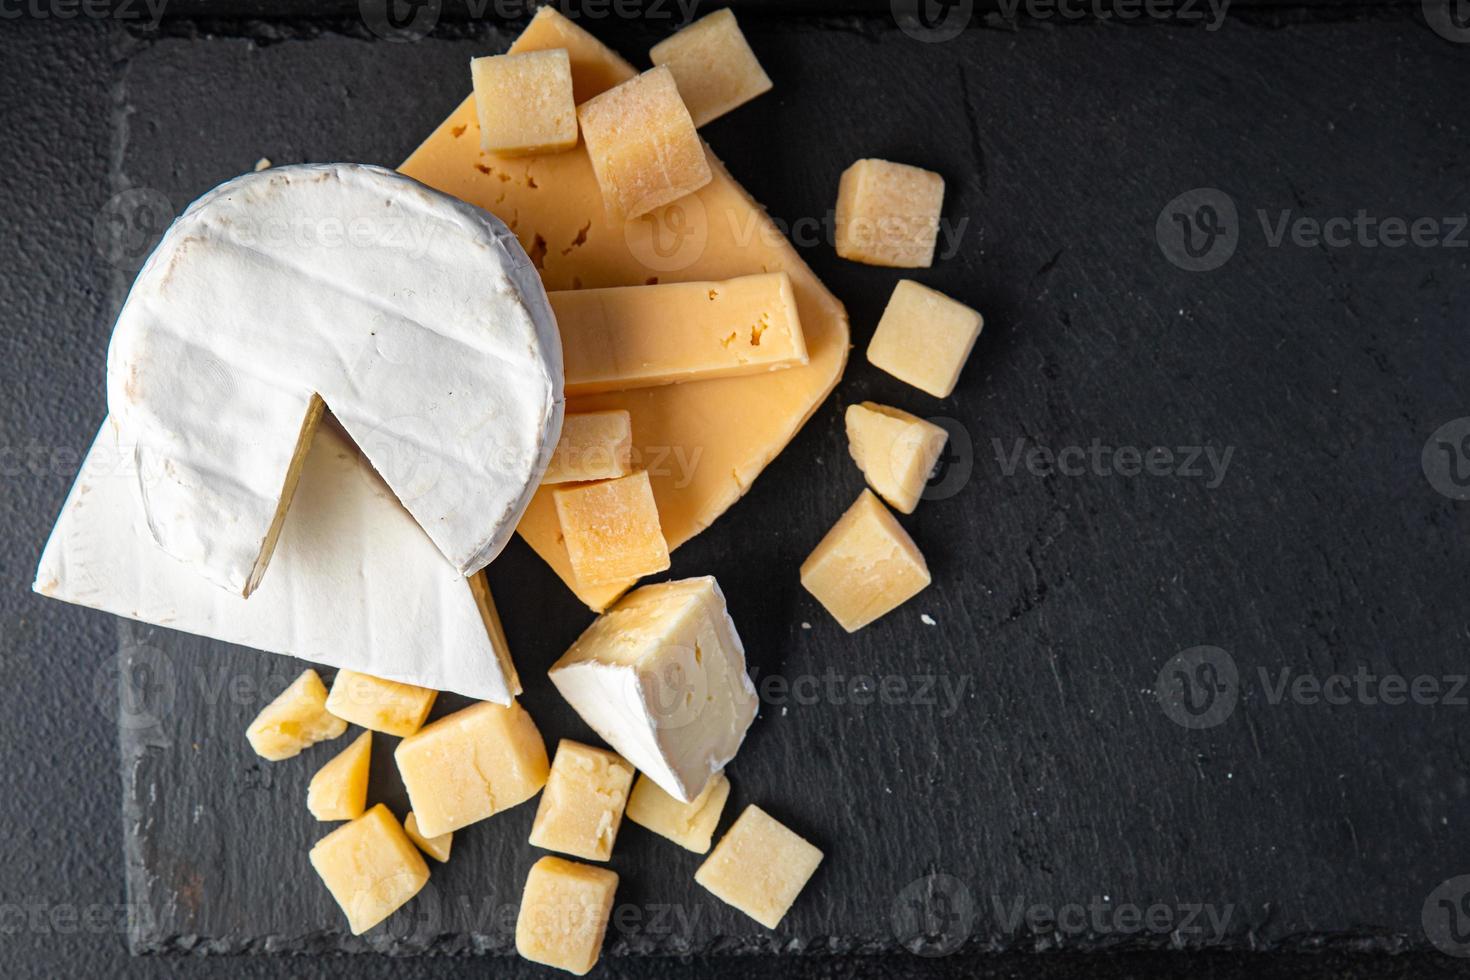 plato de queso varios tipos de queso brie, camembert, parmesano, cheddar foto